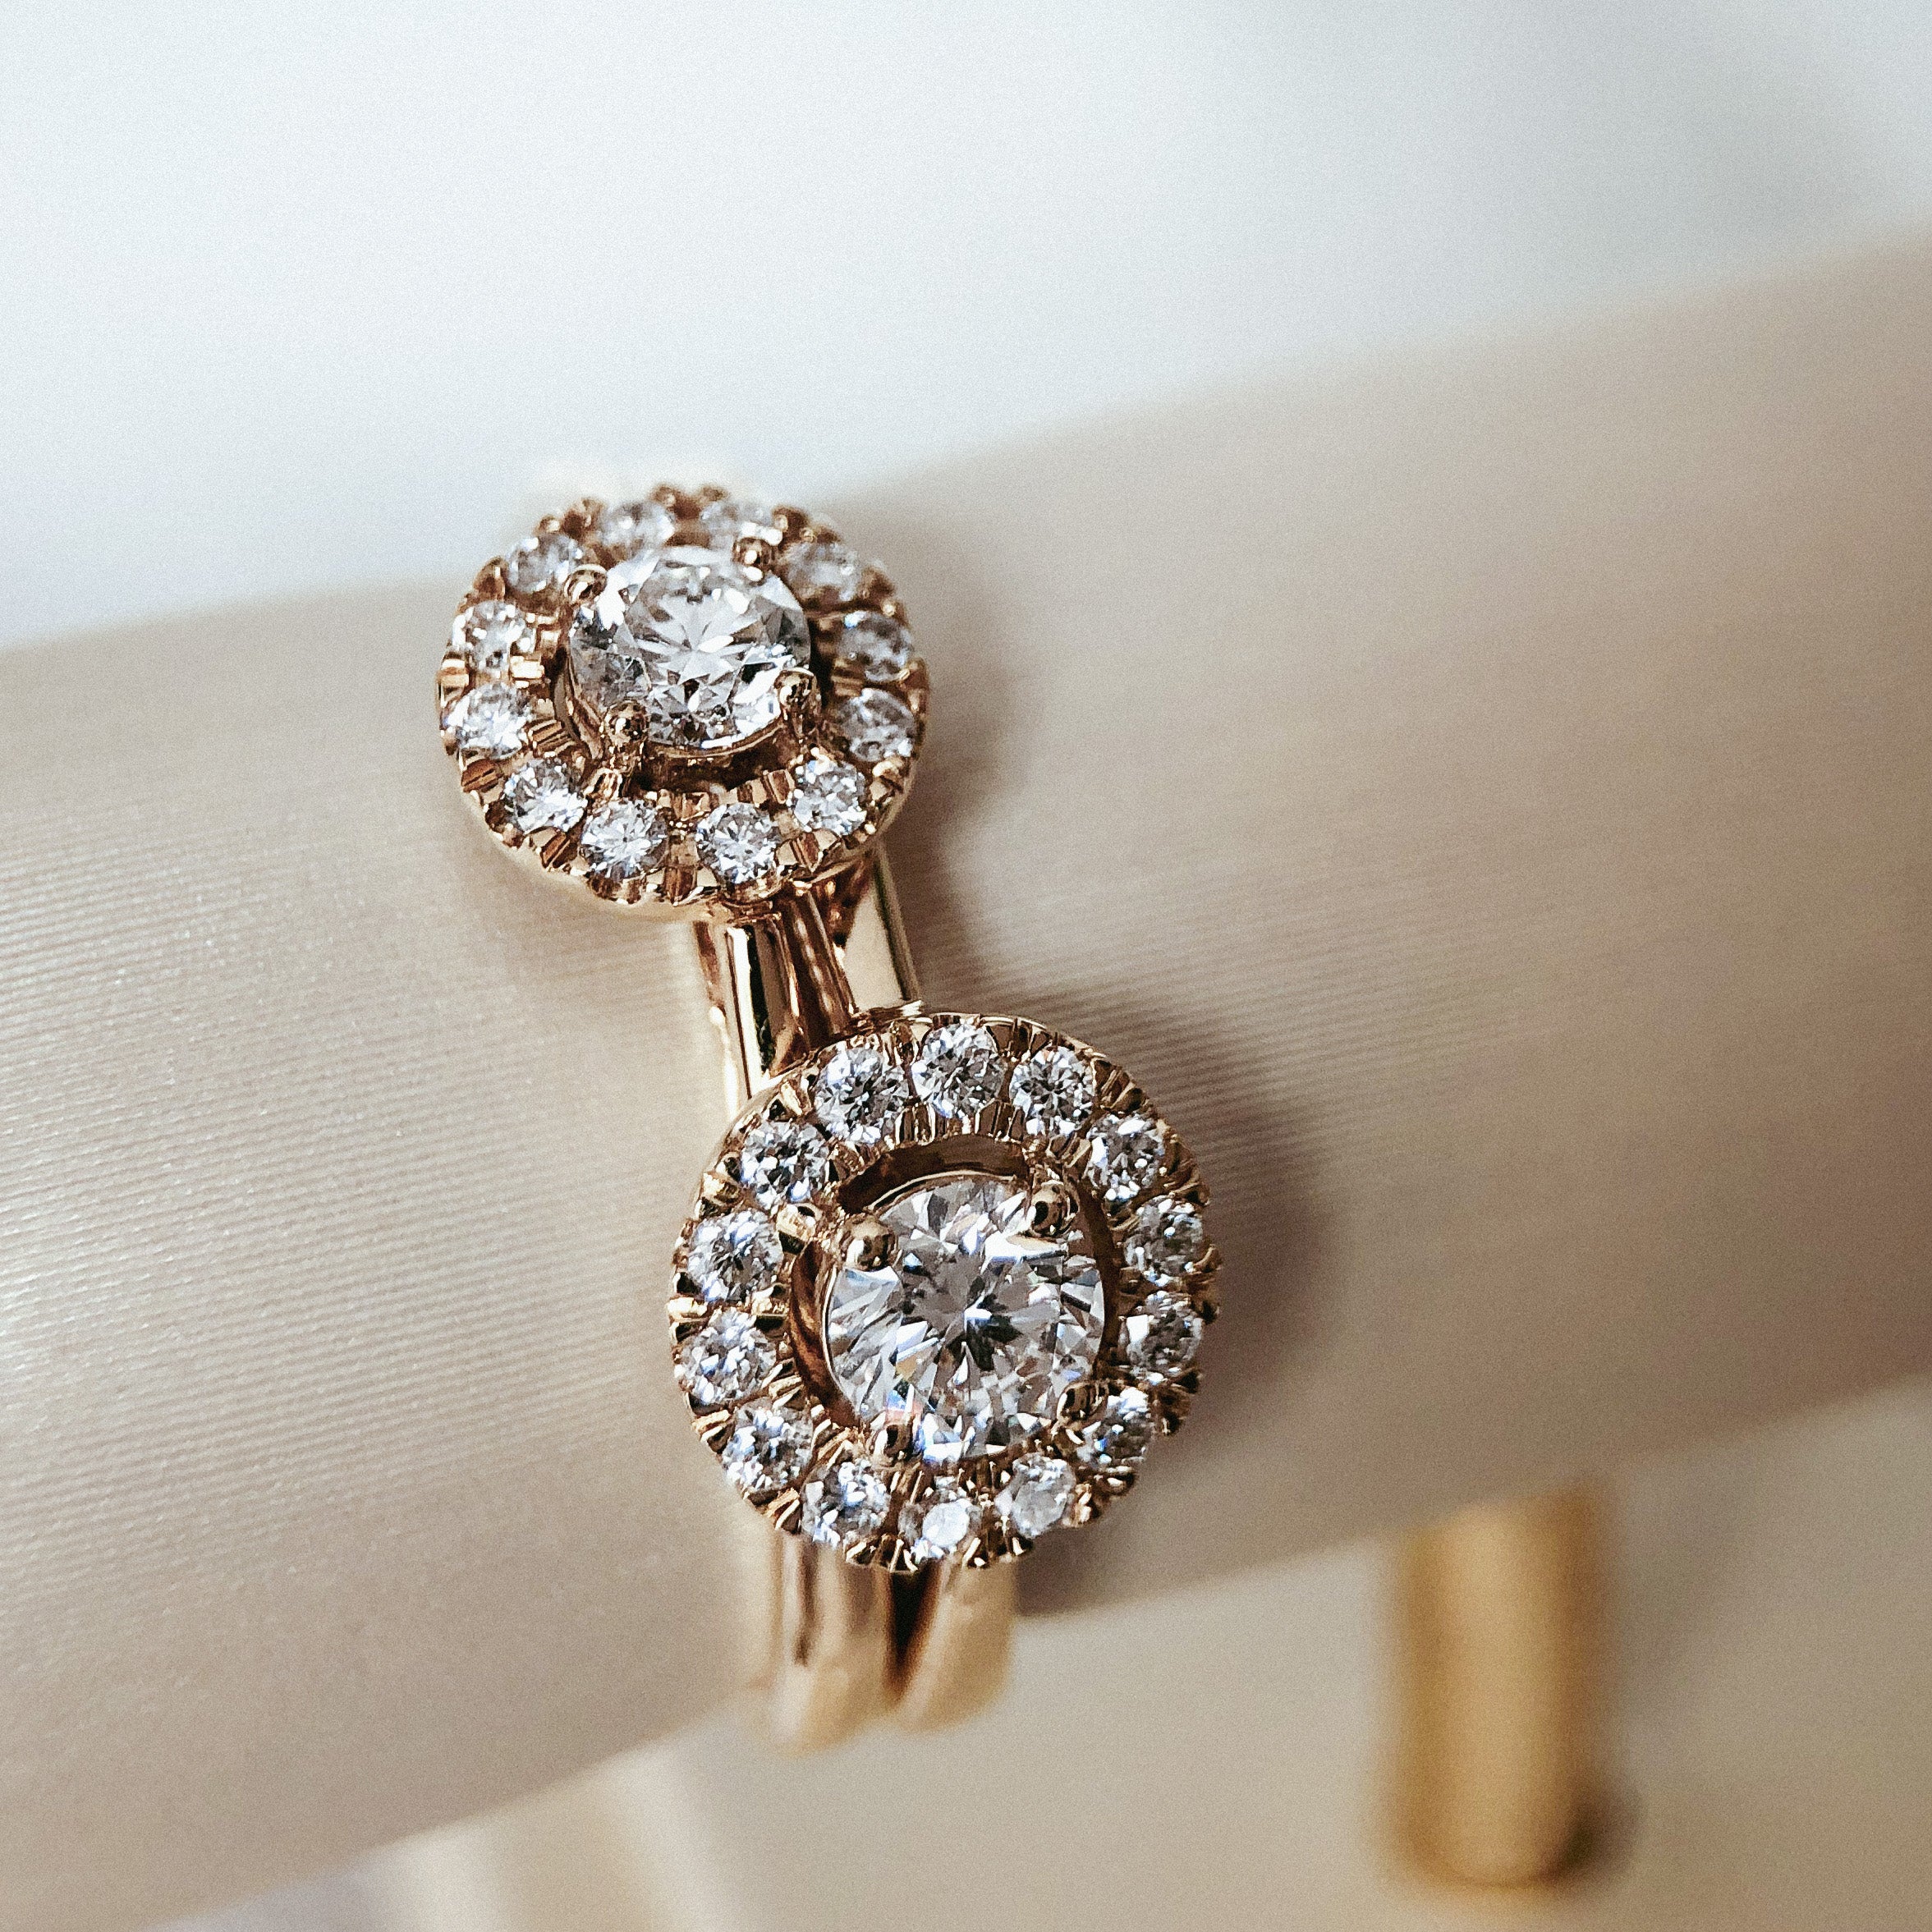 Tips om je diamanten sieraden zelf schoon te maken – Jewelry